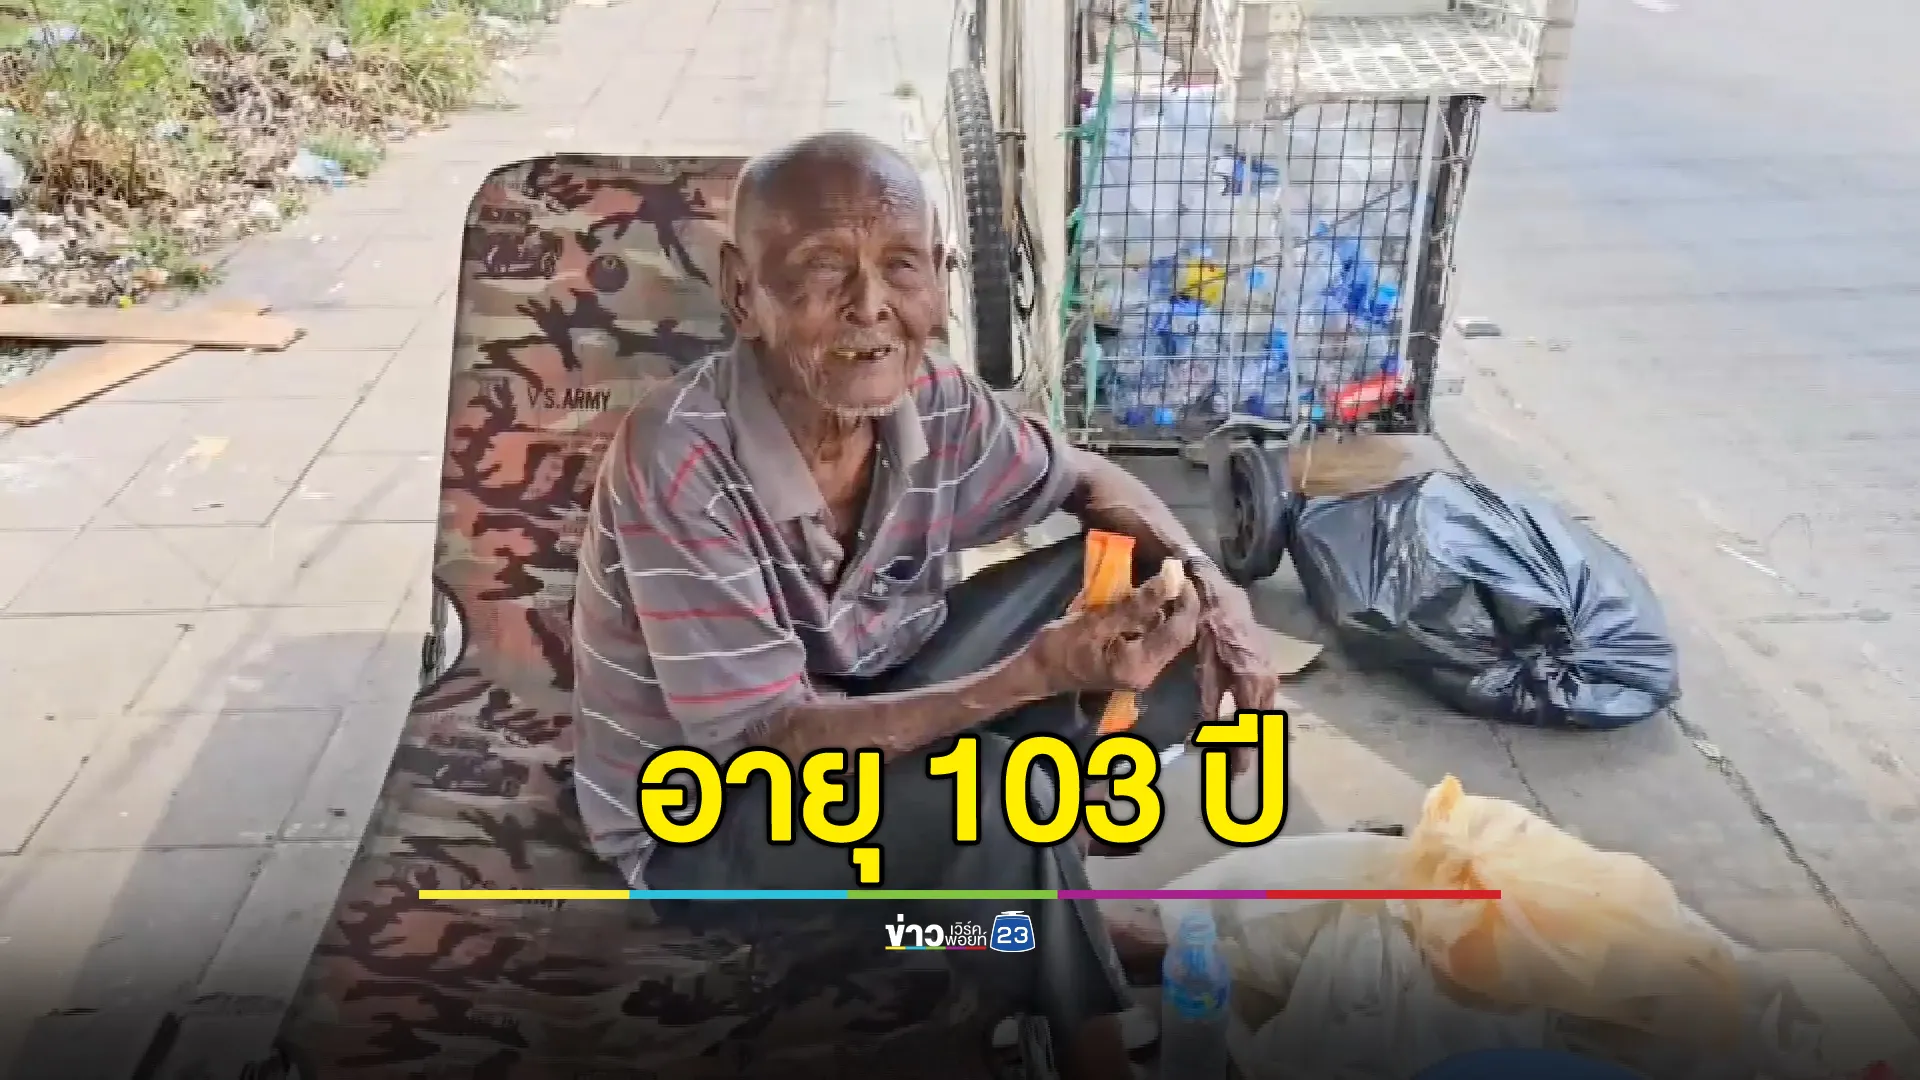 อึ้ง! ชายชราอายุ 103 ปี นอนข้างถนน-เก็บขยะขาย